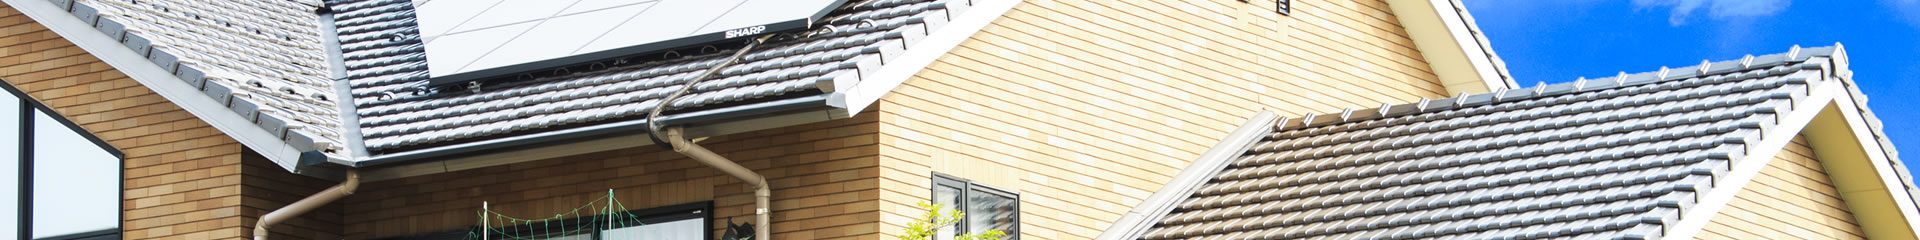 株式会社 LIB NEXUS99／リブ ネクサス 99／神奈川県座間市／戸建住宅／外装工事／屋根工事（屋根の葺き替え）、外壁サイディング、雨樋工事、各種塗装工事など／美しい仕上がり、迅速な対応、付加価値のある提案